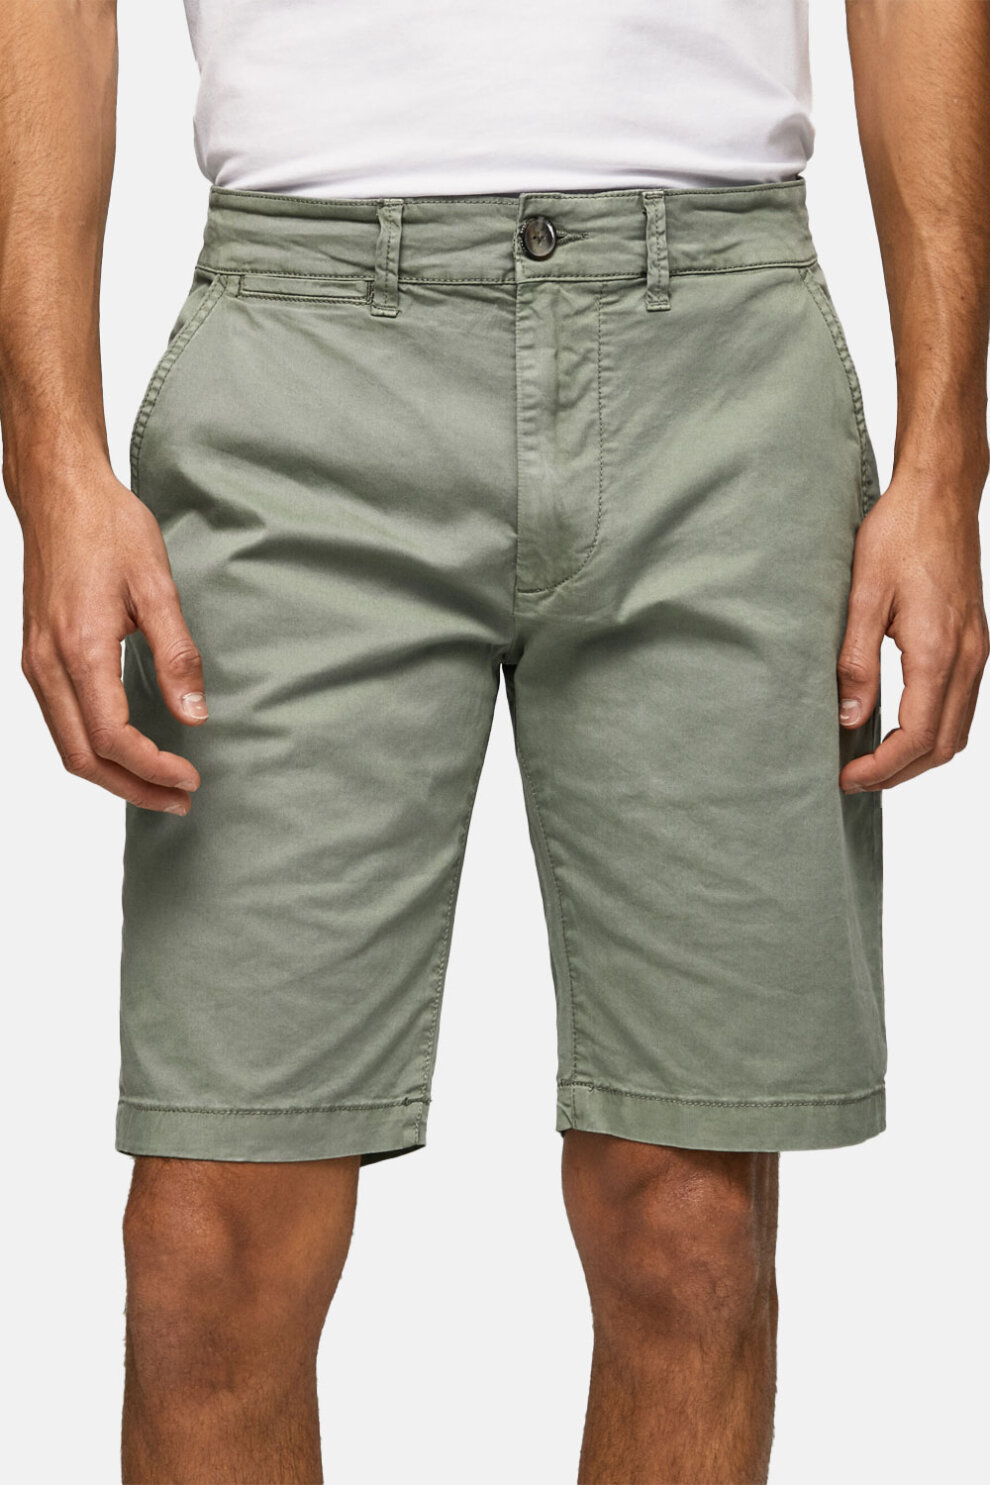 MUŠKARCI - Kratke hlače - Pepe Jeans bermude - Zelena